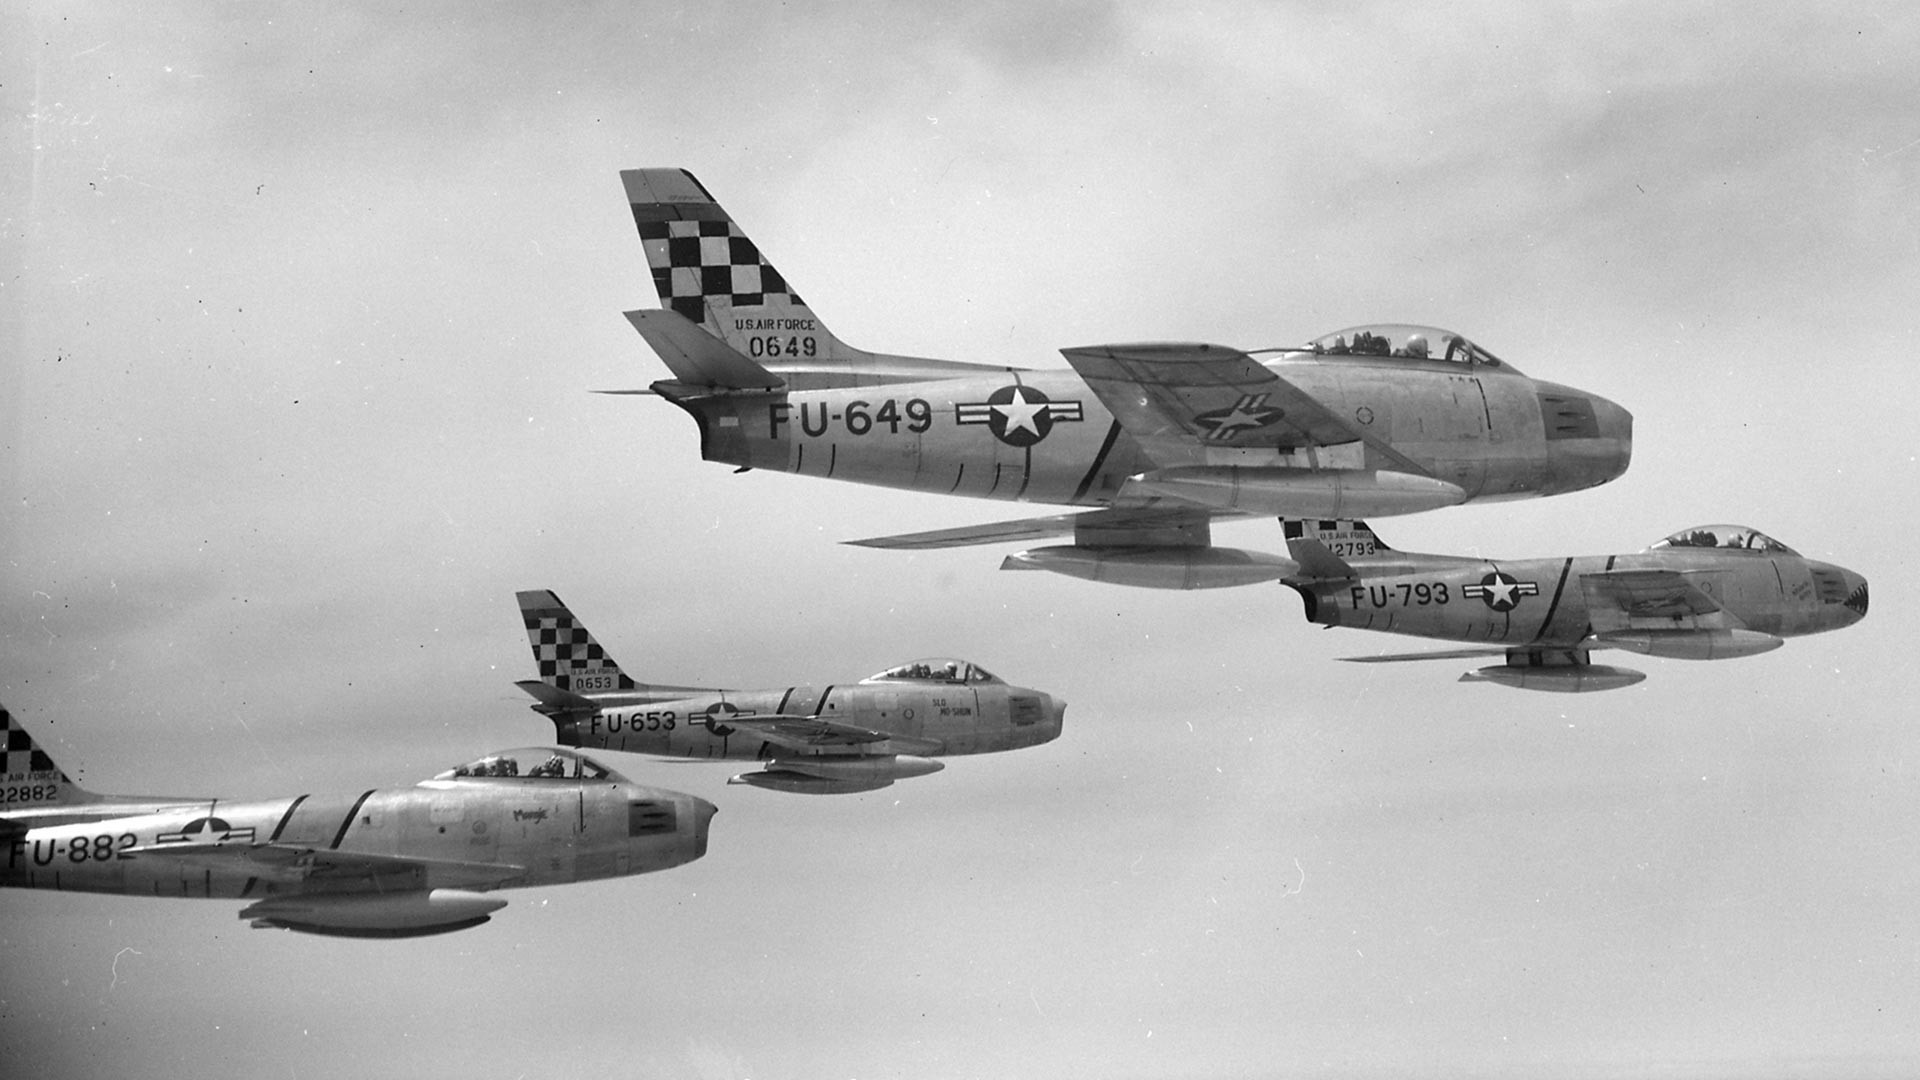 4 ловци F-86E Сејбр во состав на 51 грипа ловци-пресретнувачи над Кореја на 22 мај 1953 година. Авионите FU-649 и FU-653 се модел F-86E-5-NA, FU-793 е модел F-86E-10-NA, додека FU-882 е модел F-86E-6-CAN кој оригинално го произведе Канада, но го испорача на американското воздухопловство.